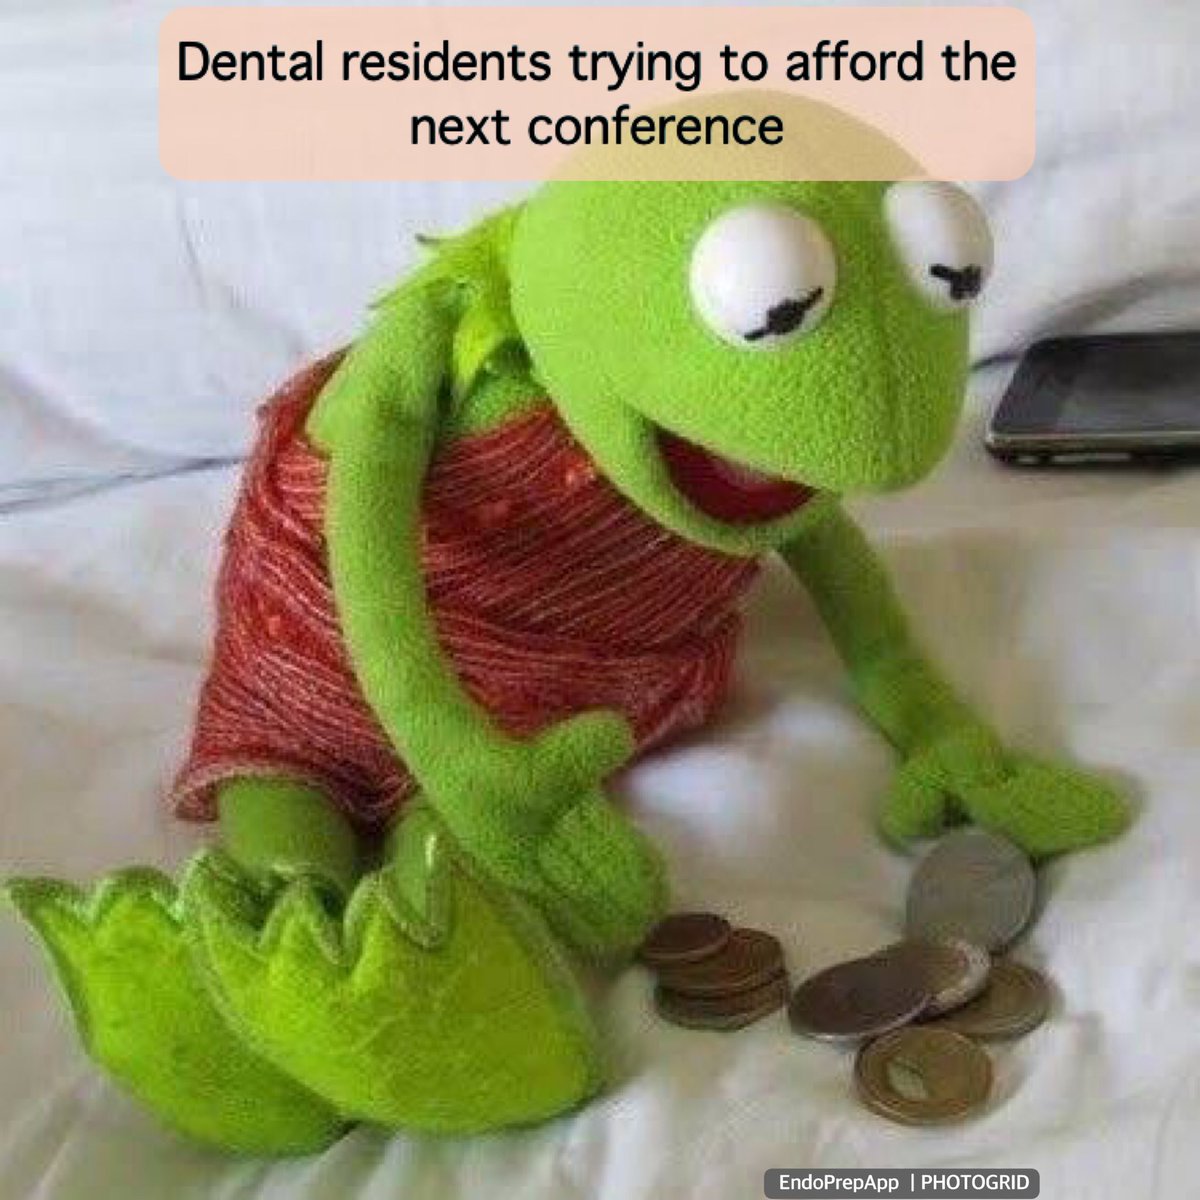 #endodontist #endodontia #endodontista #endodoncia #endodoncista #endodonzia #rootcanal #rootcanaltreatment #rct #dentist #dentistry #dental #odontologia #odontologos #odontoiatria #odontología #dentiste #dentista #dentistica #endodonti #endodontictreatment #endodontology